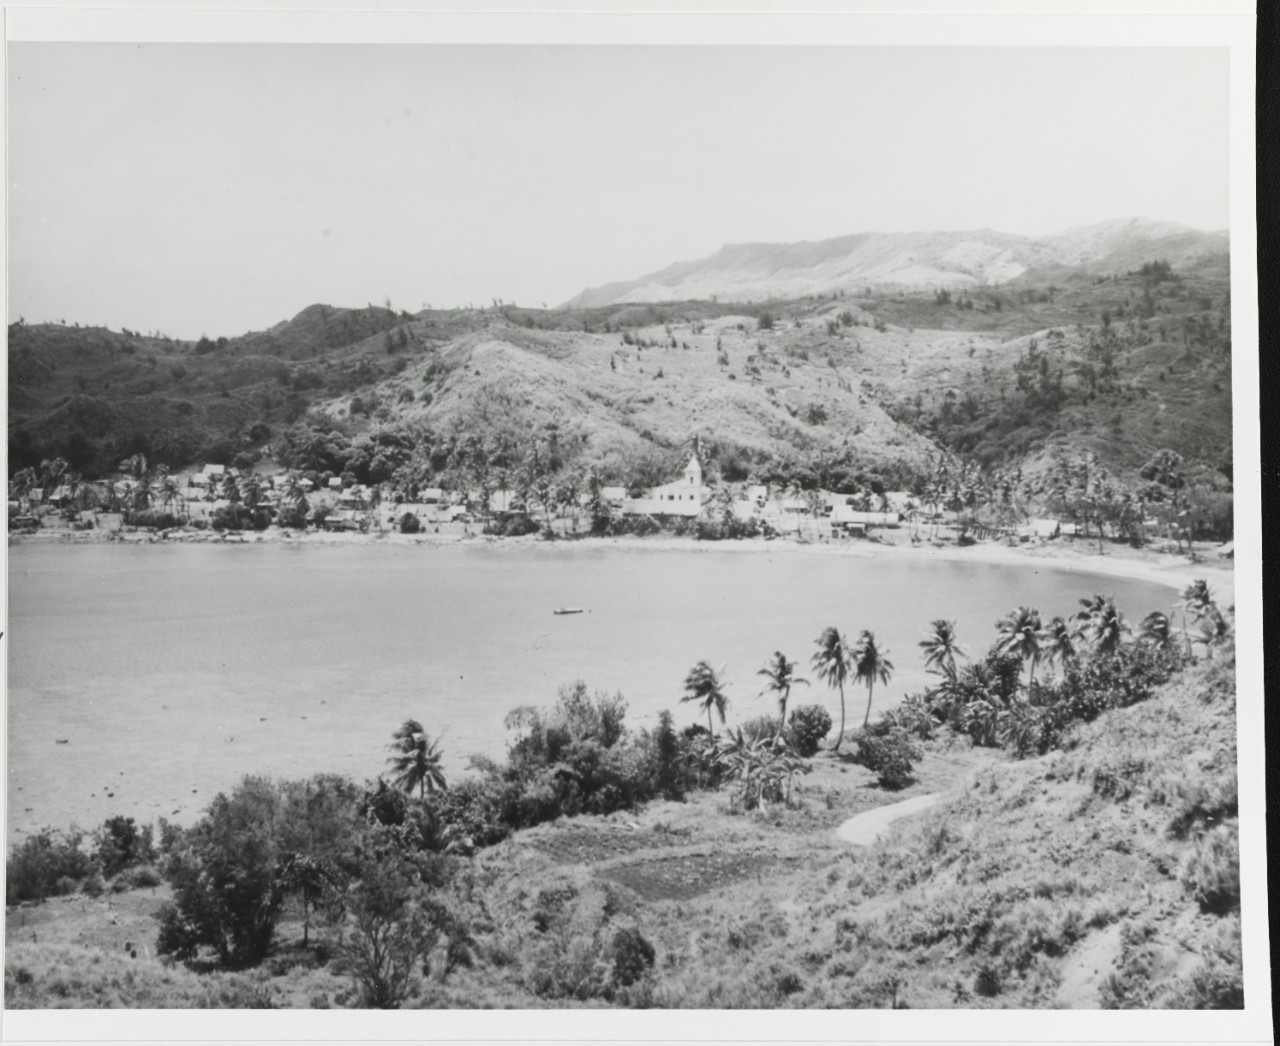 Umatoc Bay and Village, Guam.